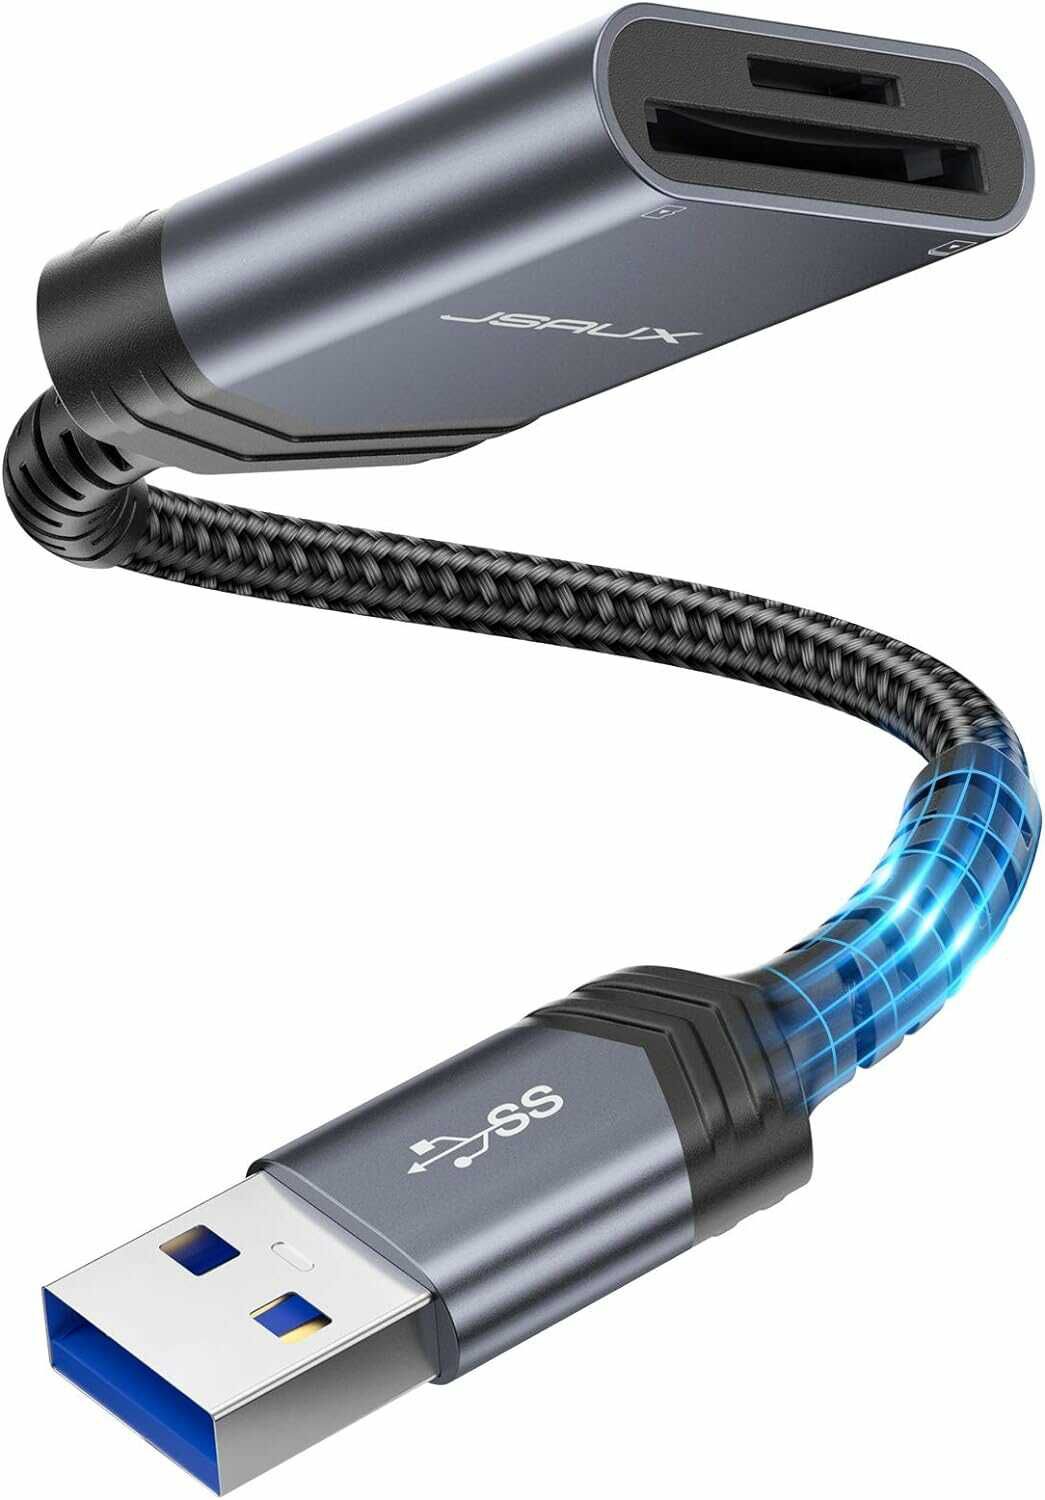 SD/microSD Speicherkartenleser mit USB3 für 8,99€ statt 15€